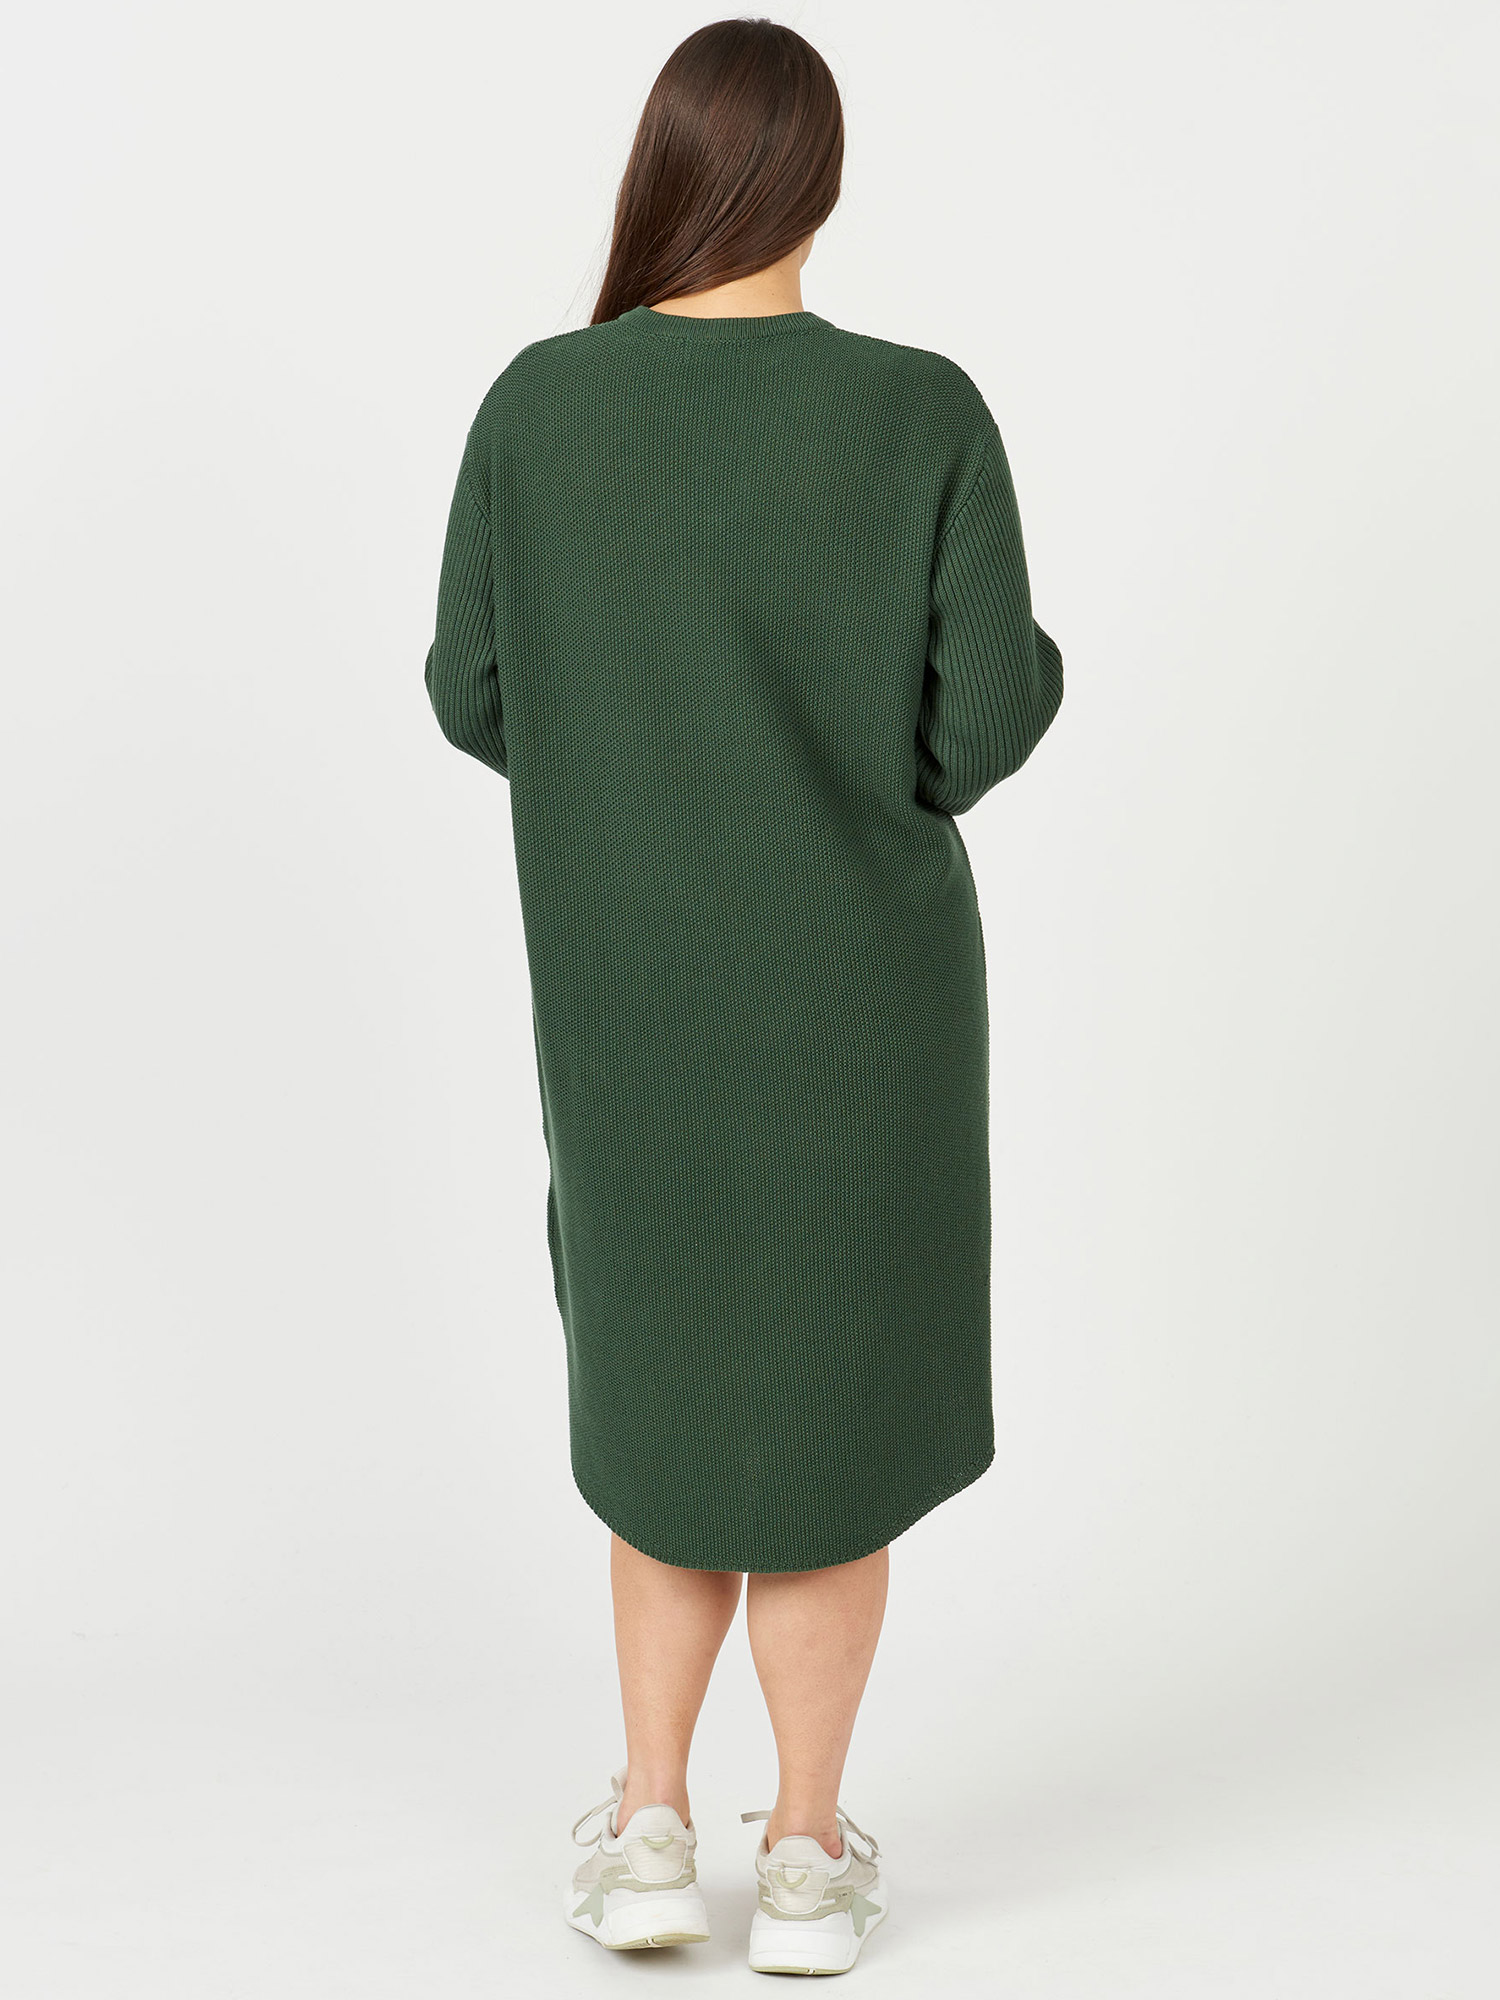 GLENDALE - Mørkegrøn kjole i blød og varm bomulds strik fra Aprico